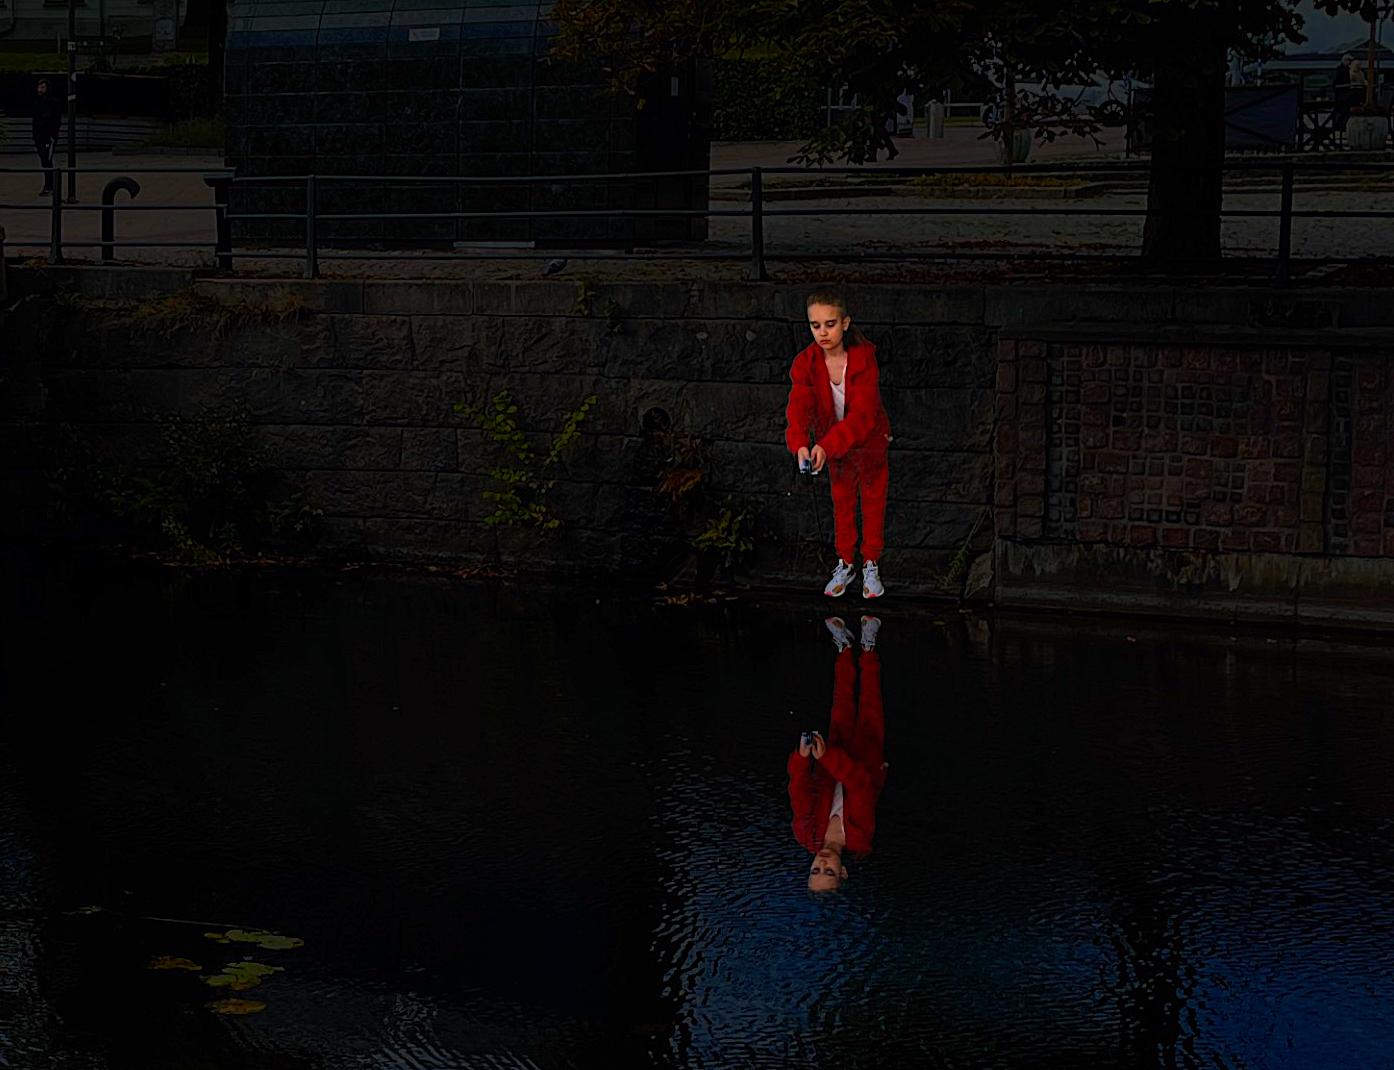 Kvällsmörker i stadsmiljö med en projicerad flicka i röda kläder som håller ett fiskspö ovanför ett vattendrag